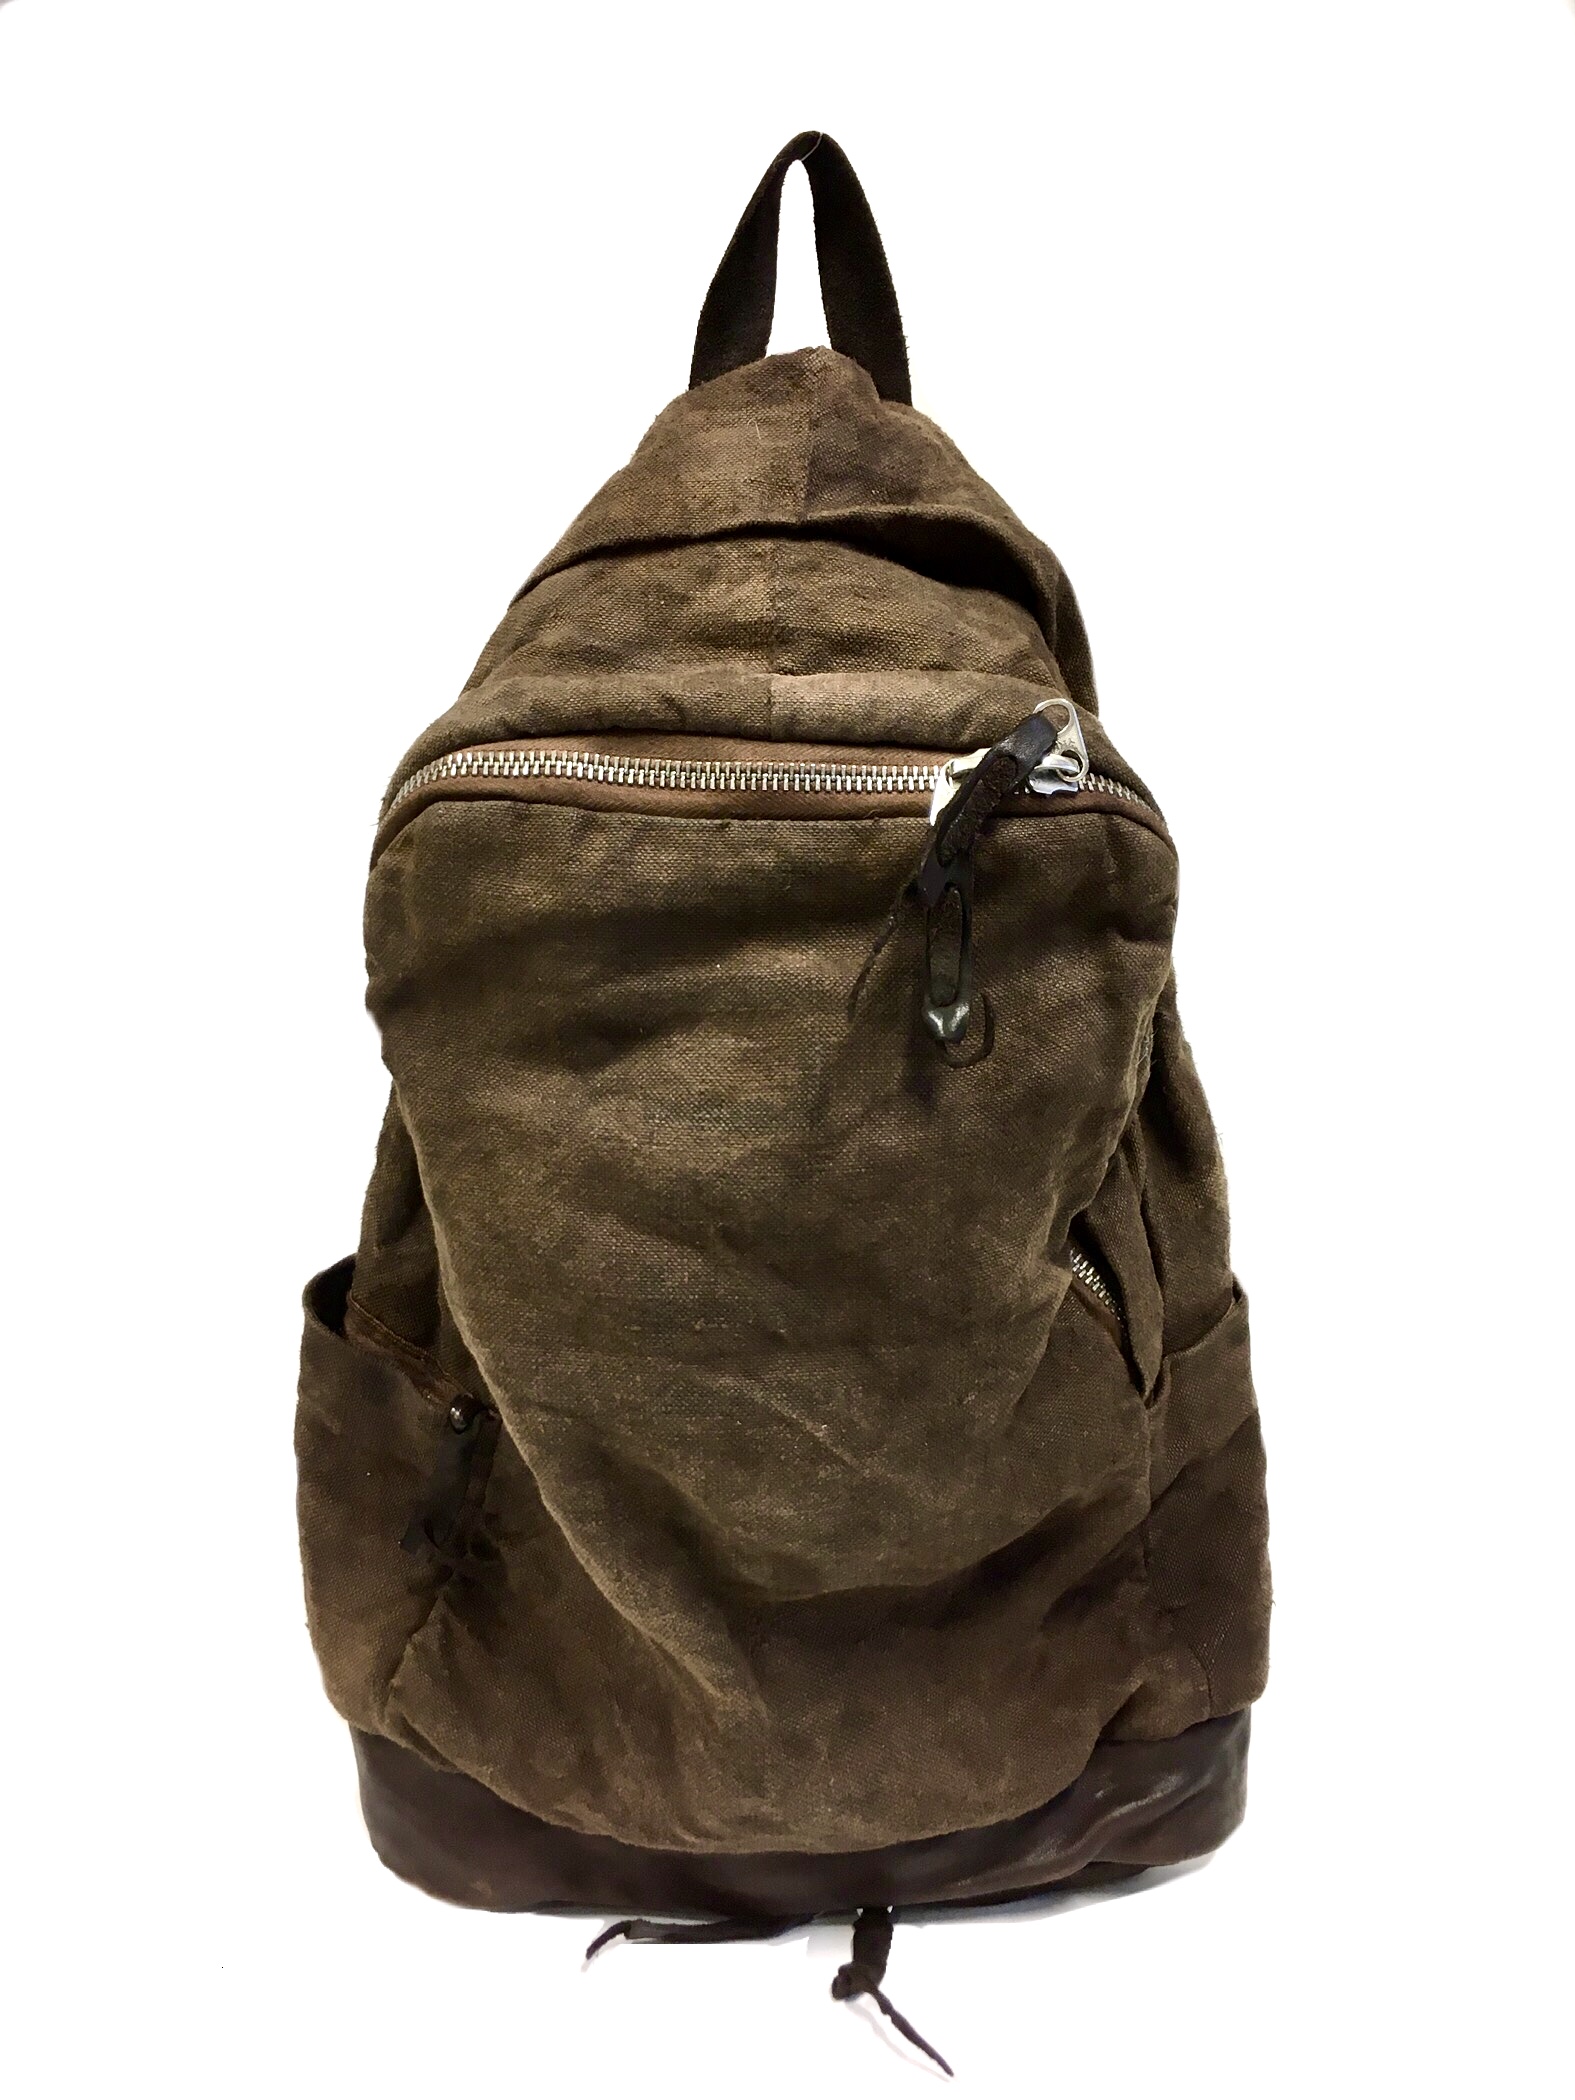 Distressed Backpack Brown